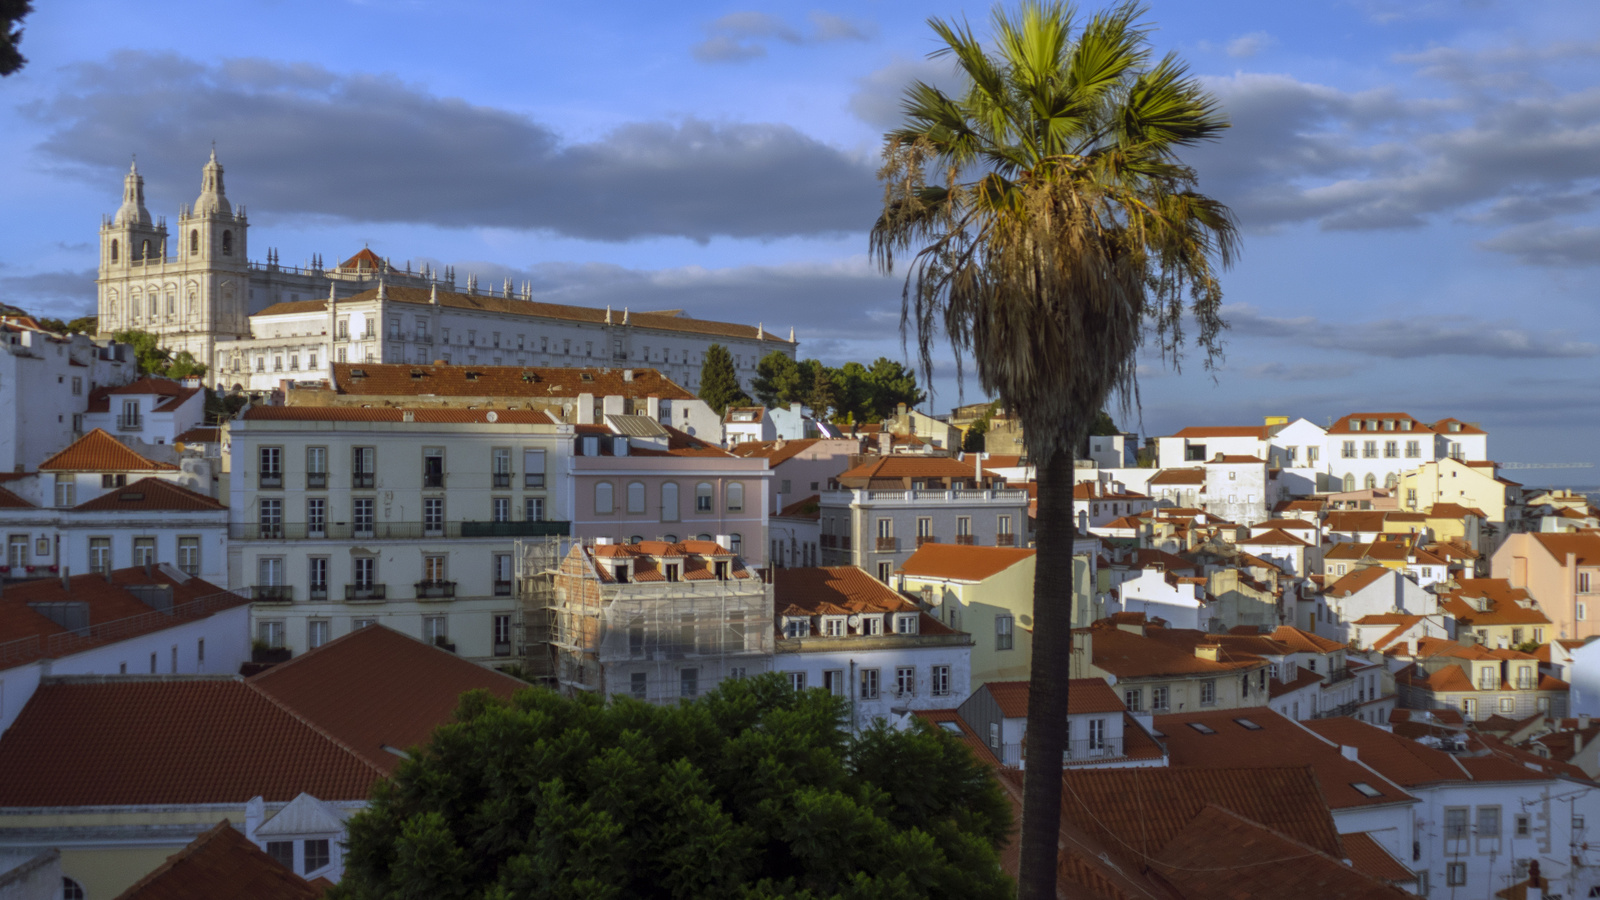 Lisbon - Mosteiro de São Vicente de Fora